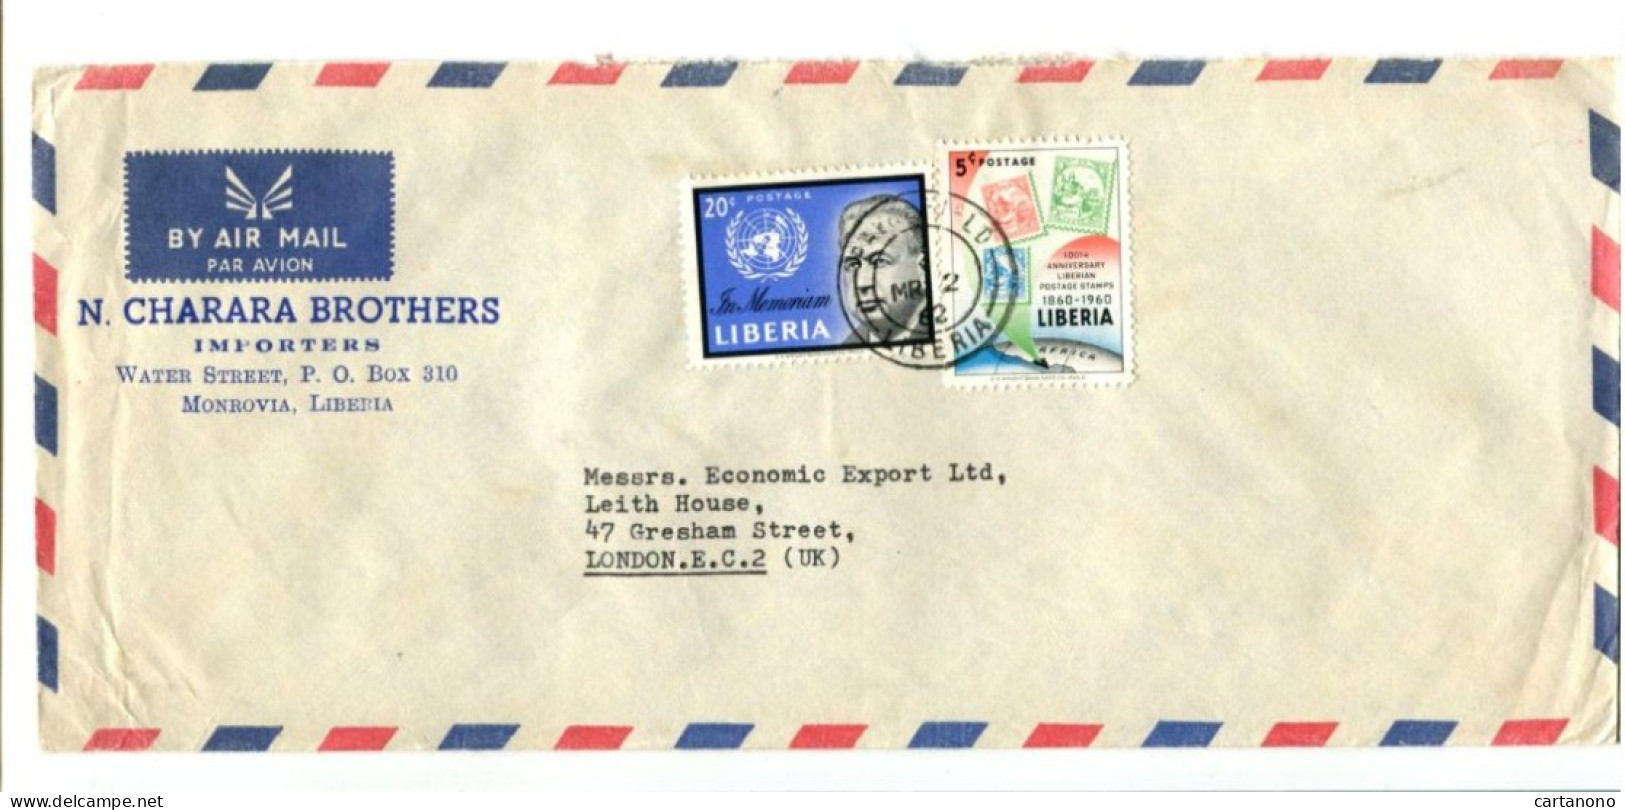 LIBERIA - Affranchissement Sur Lettre Par Avion - O.N.U. / 100e An. Du Timbre Du Liberia - Liberia